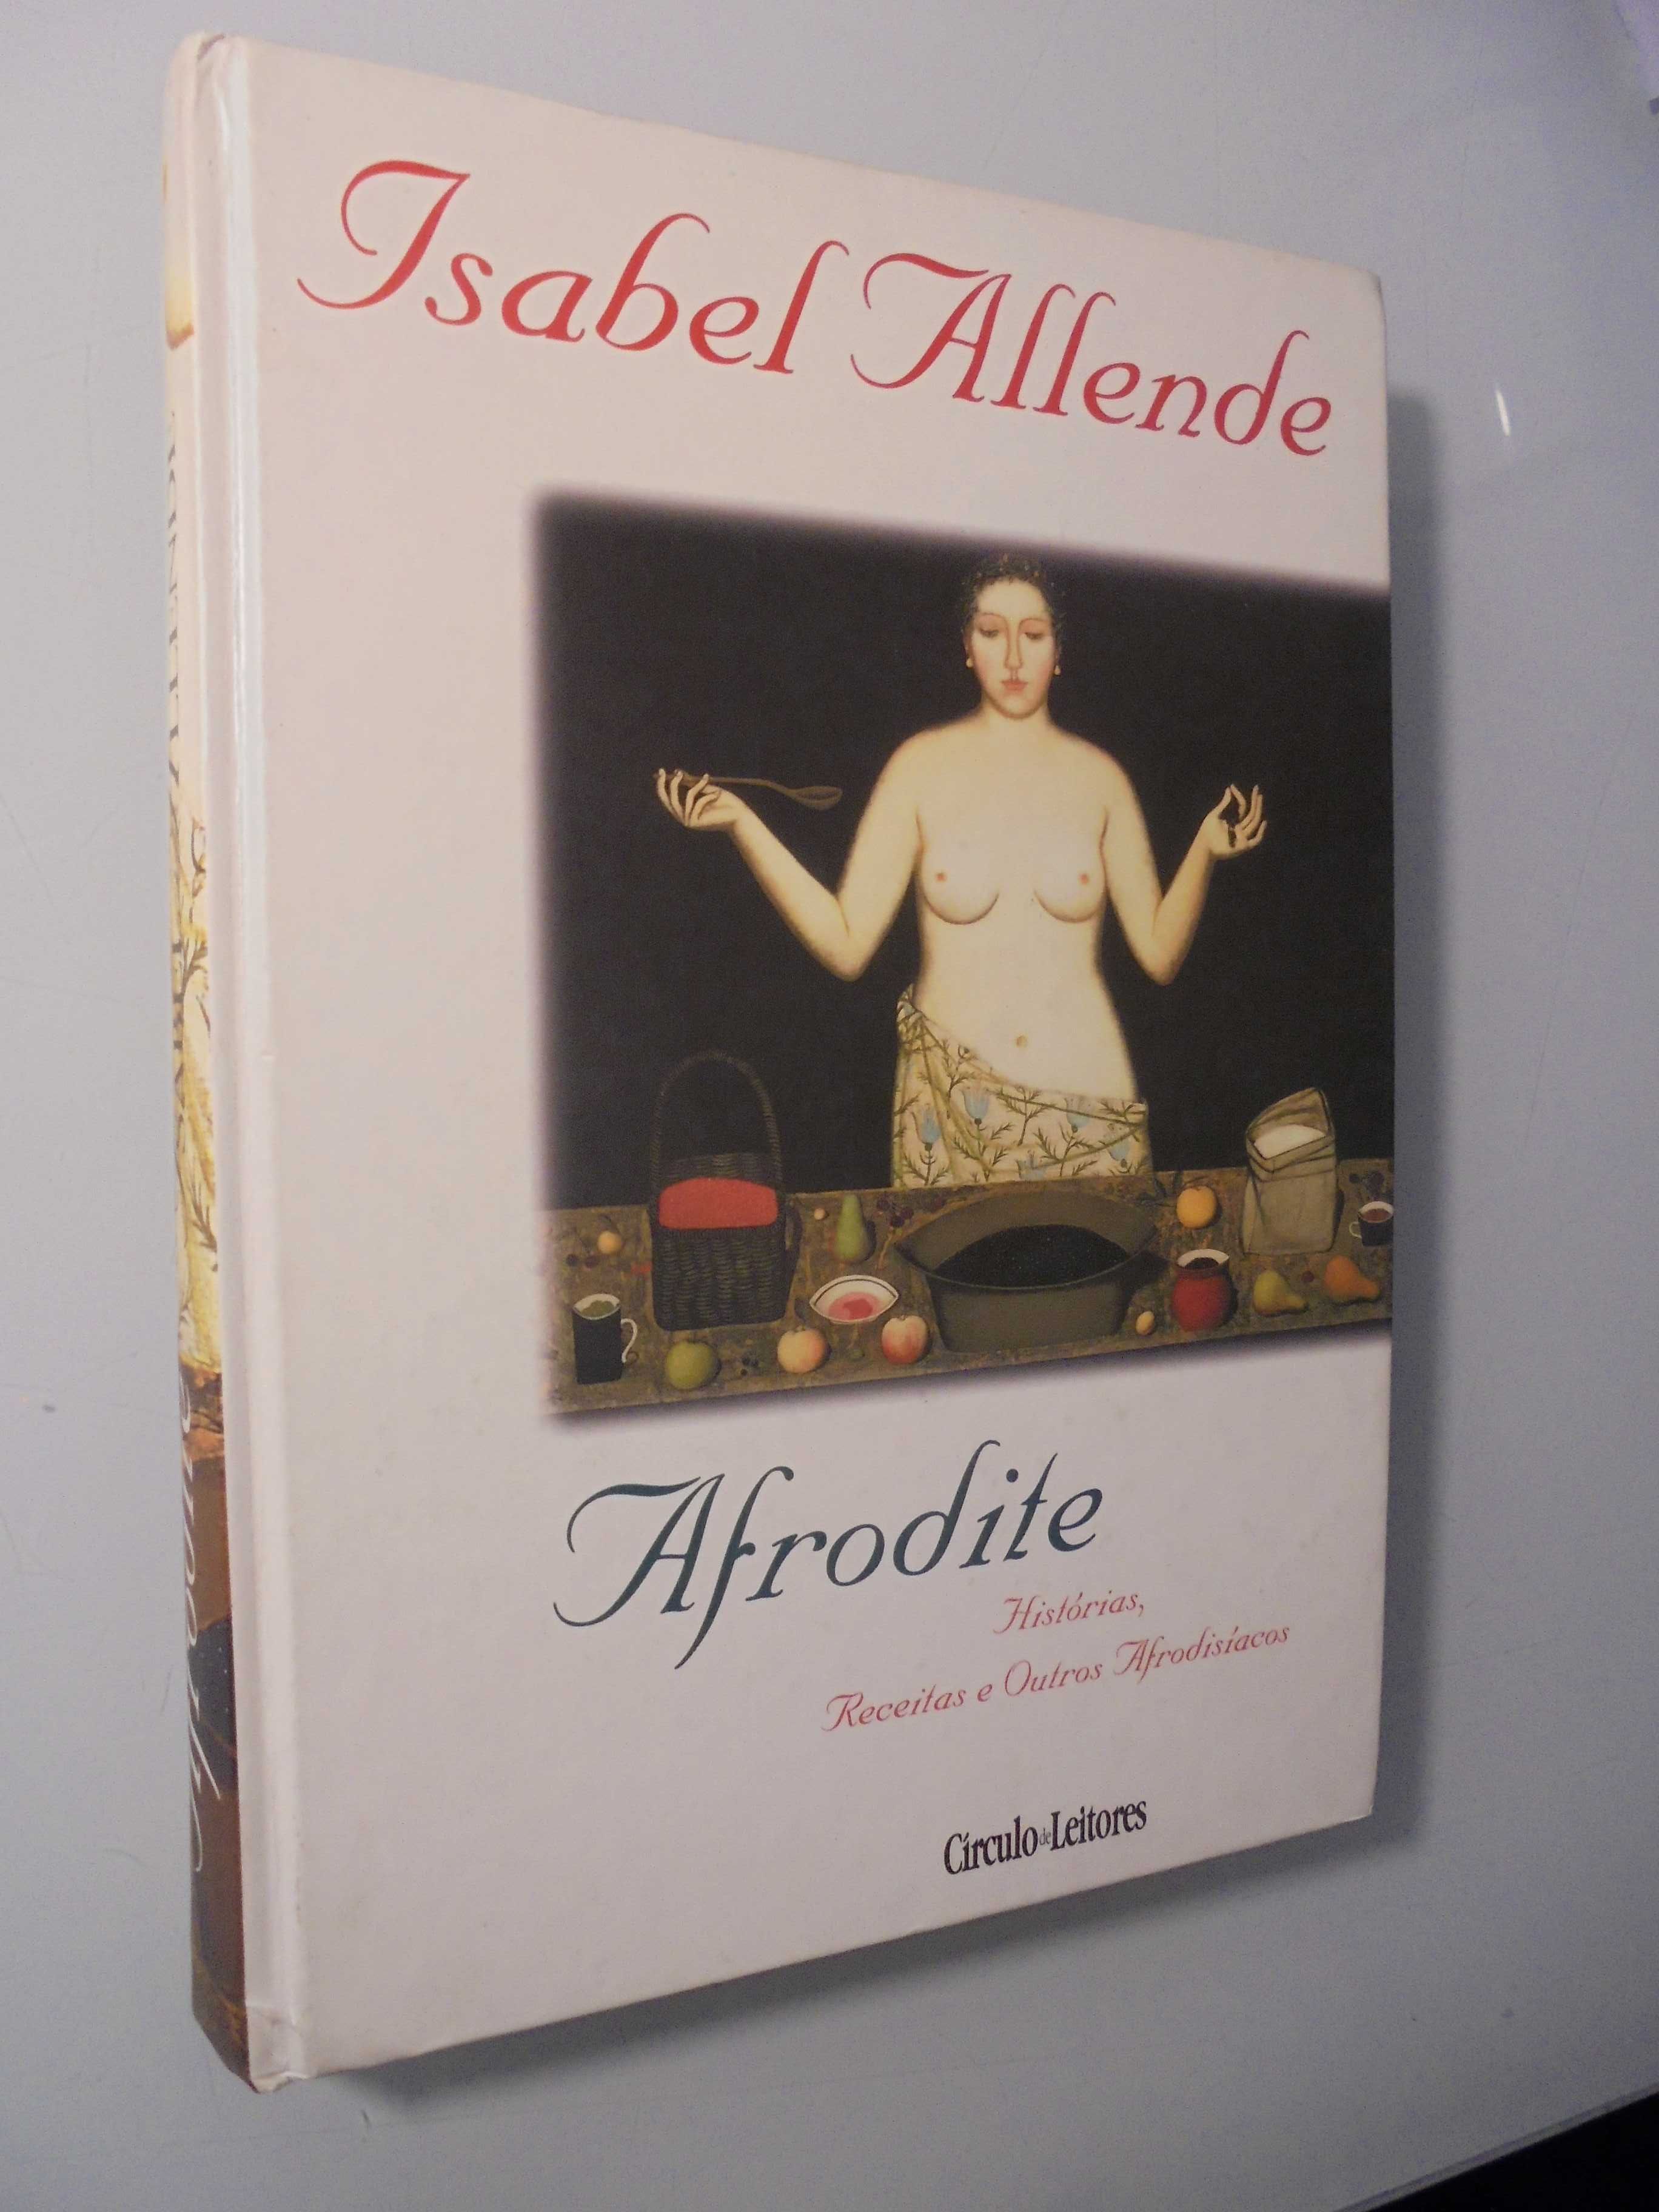 Allende (Isabel);Afrodite-Histórias,Receitas e outros Afrodisíacos